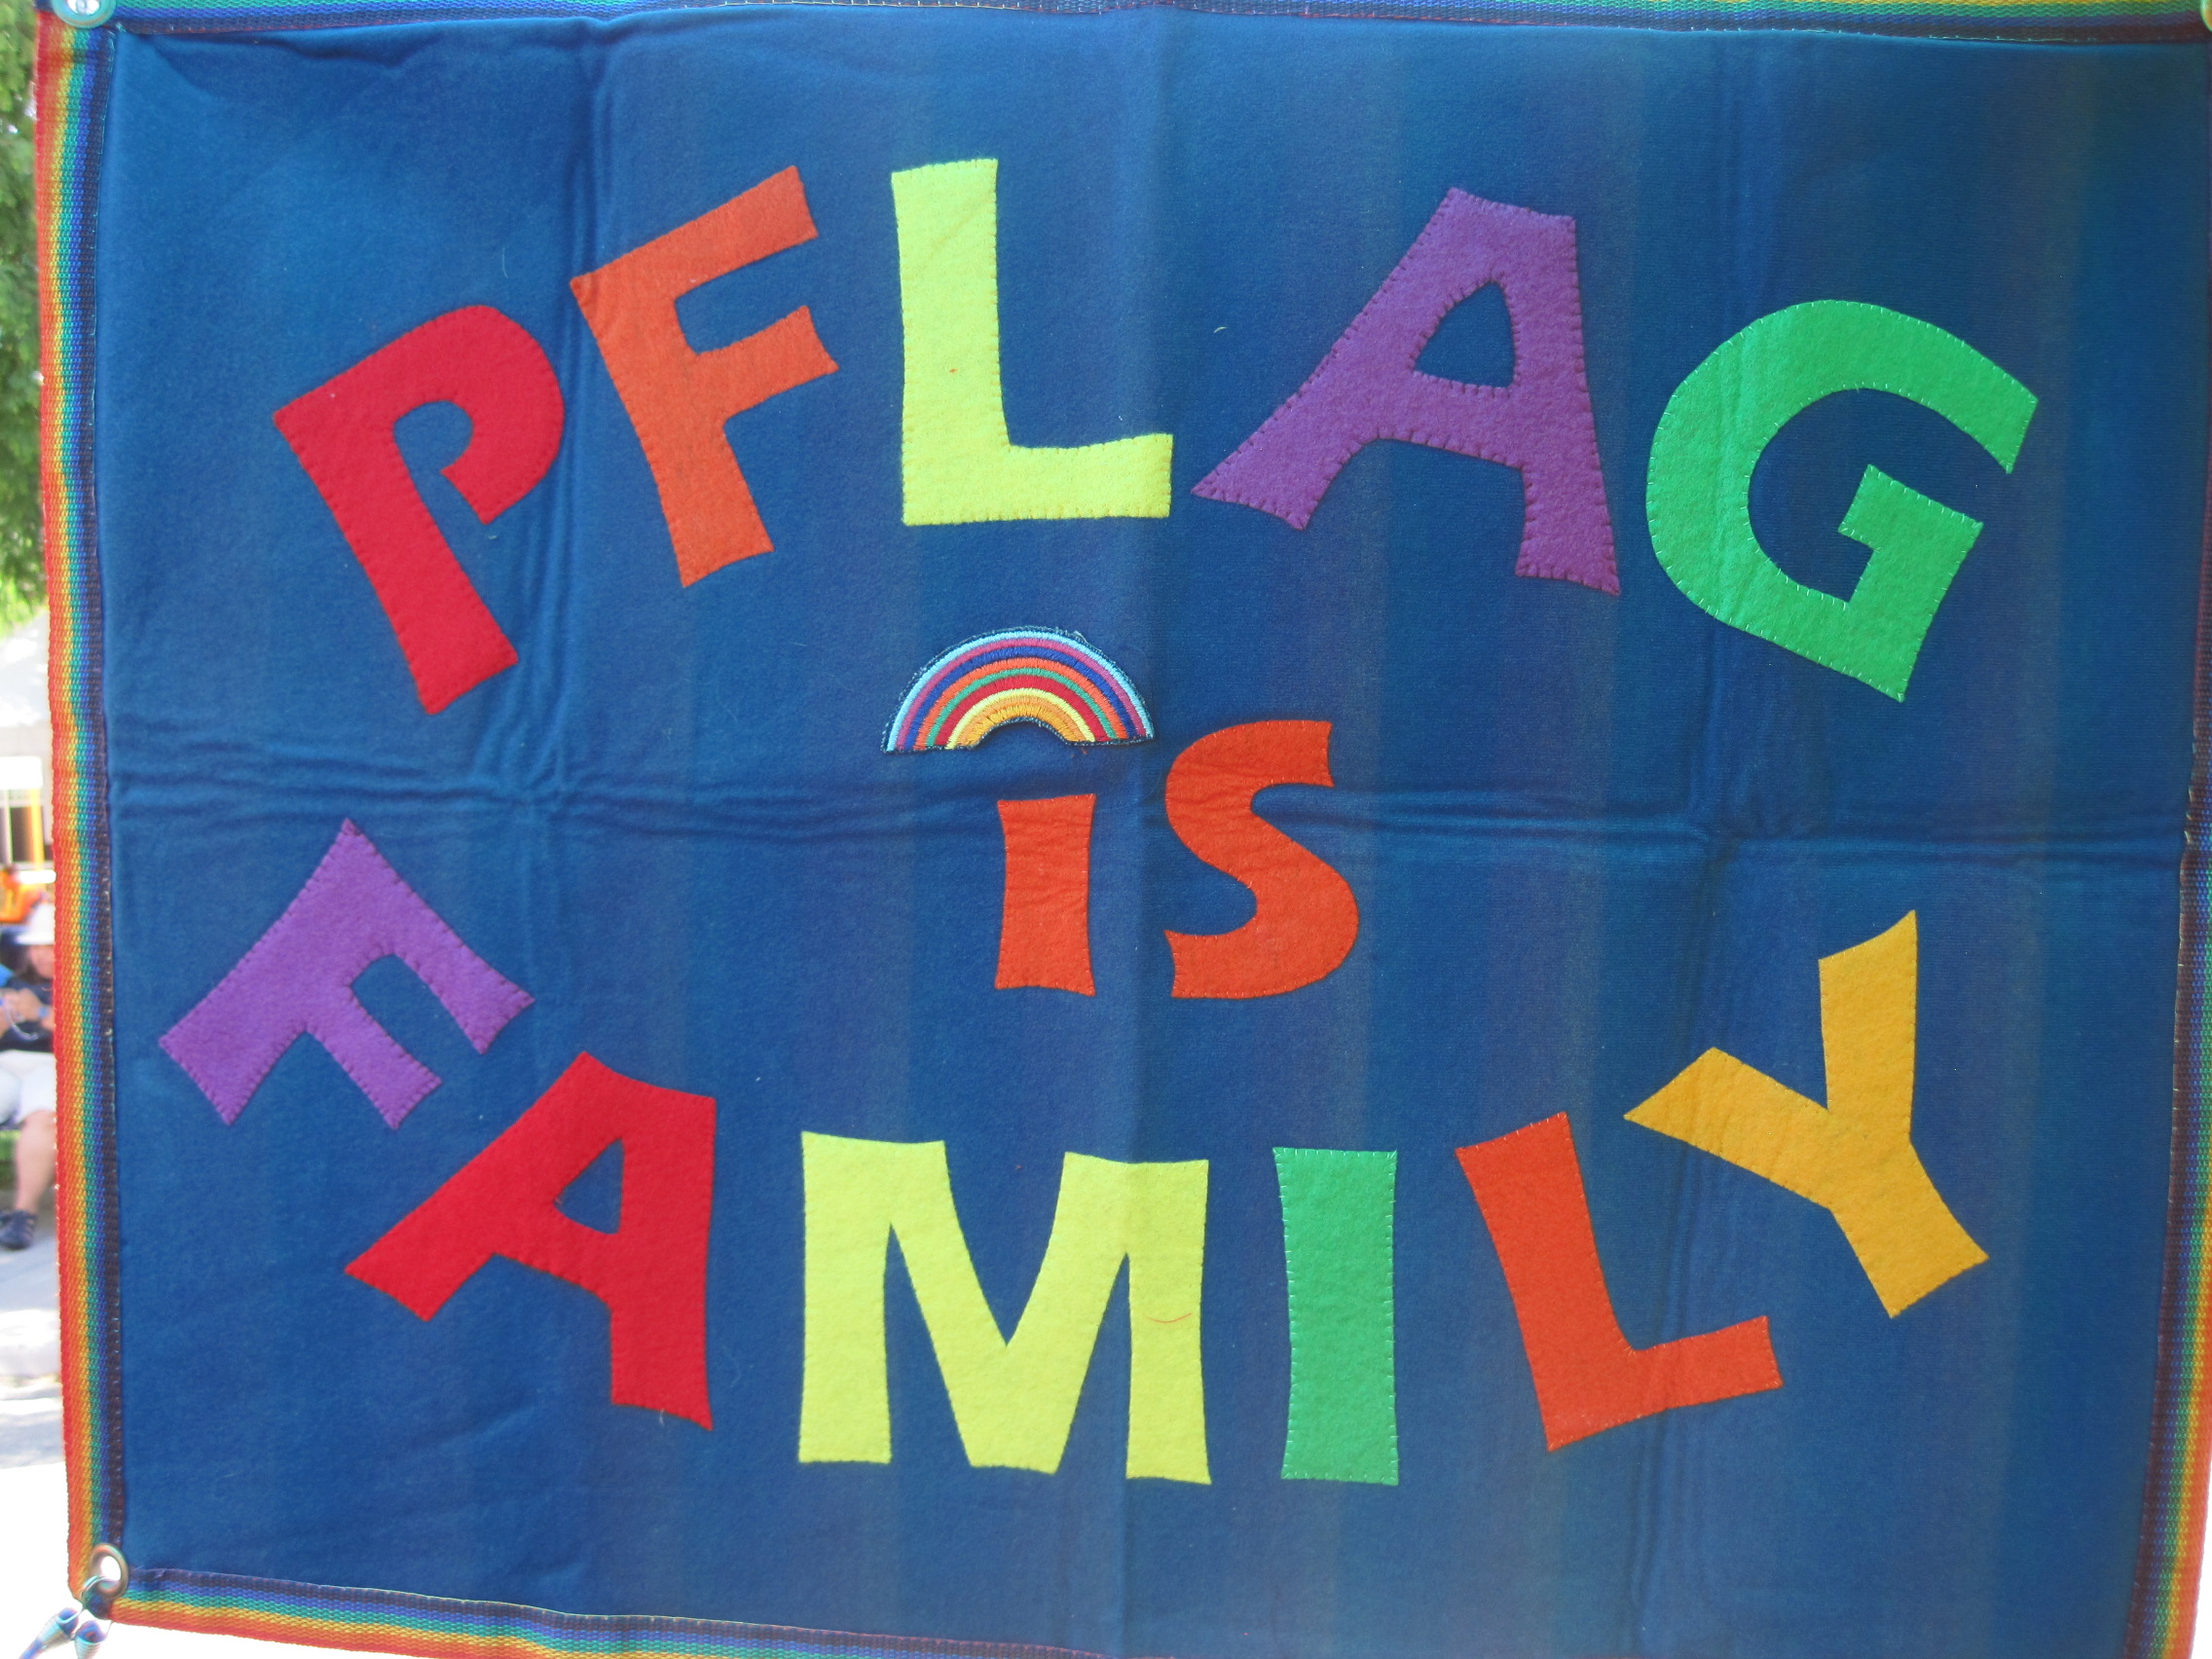 PFLAG is Family Banner